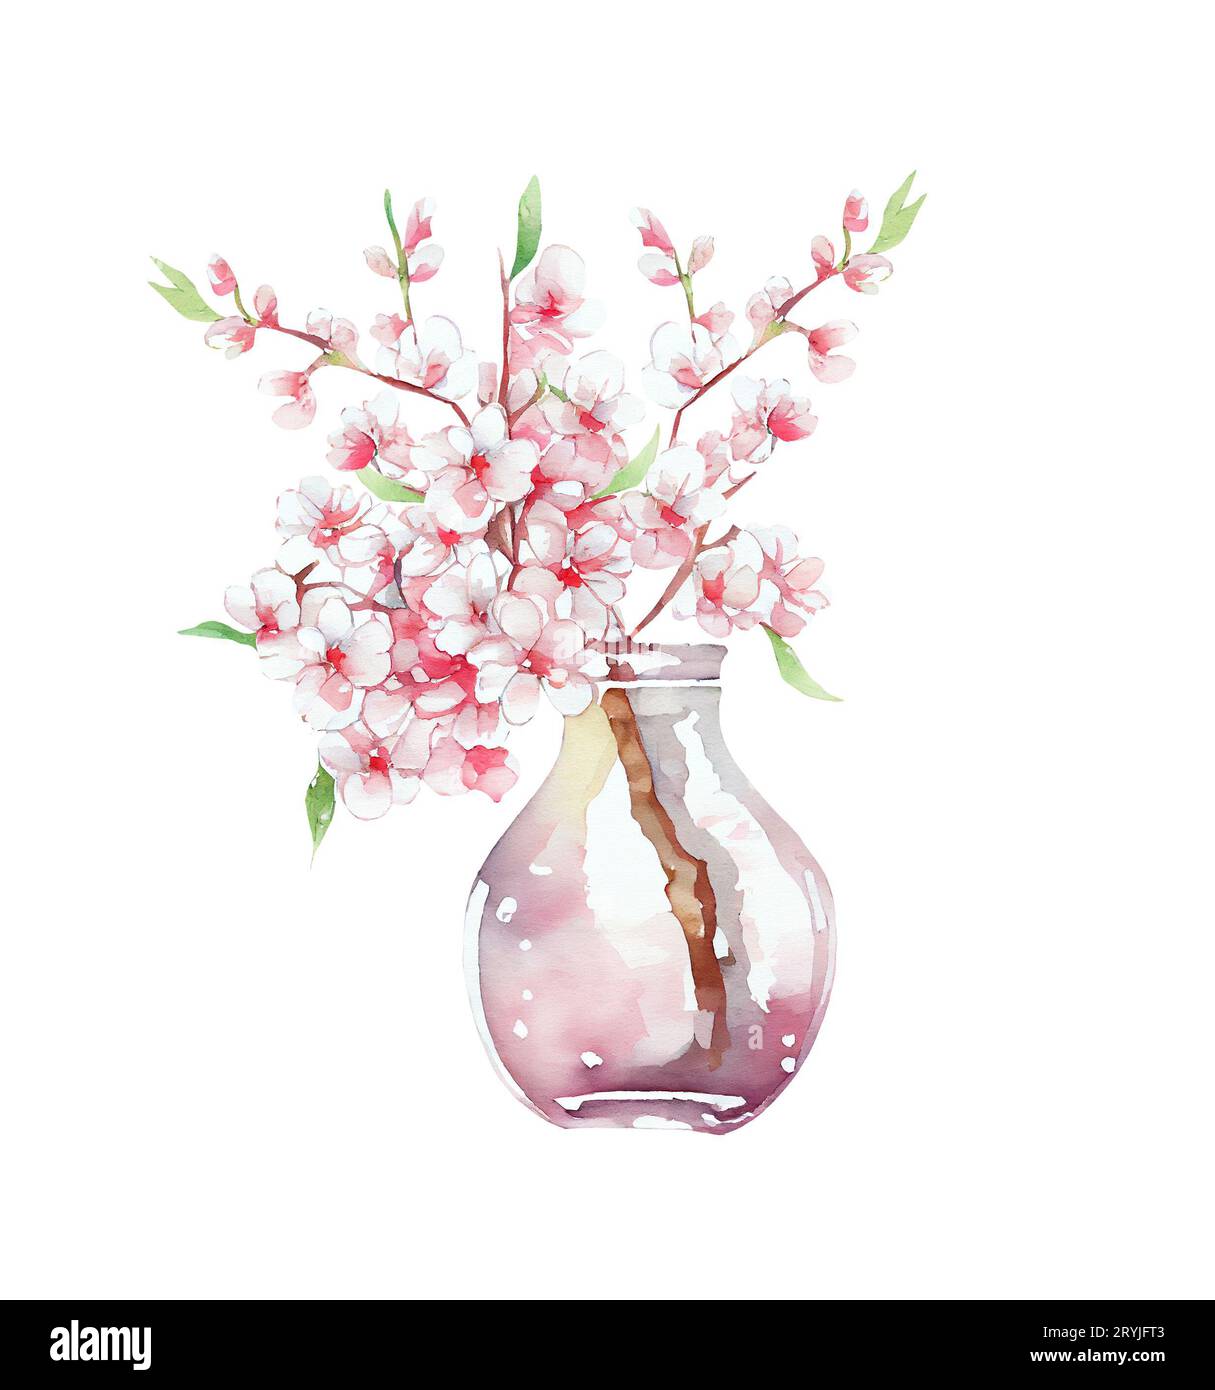 Perruque printanière dans un vase en verre. Fleurs de cerisier roses. illustration aquarelle Banque D'Images